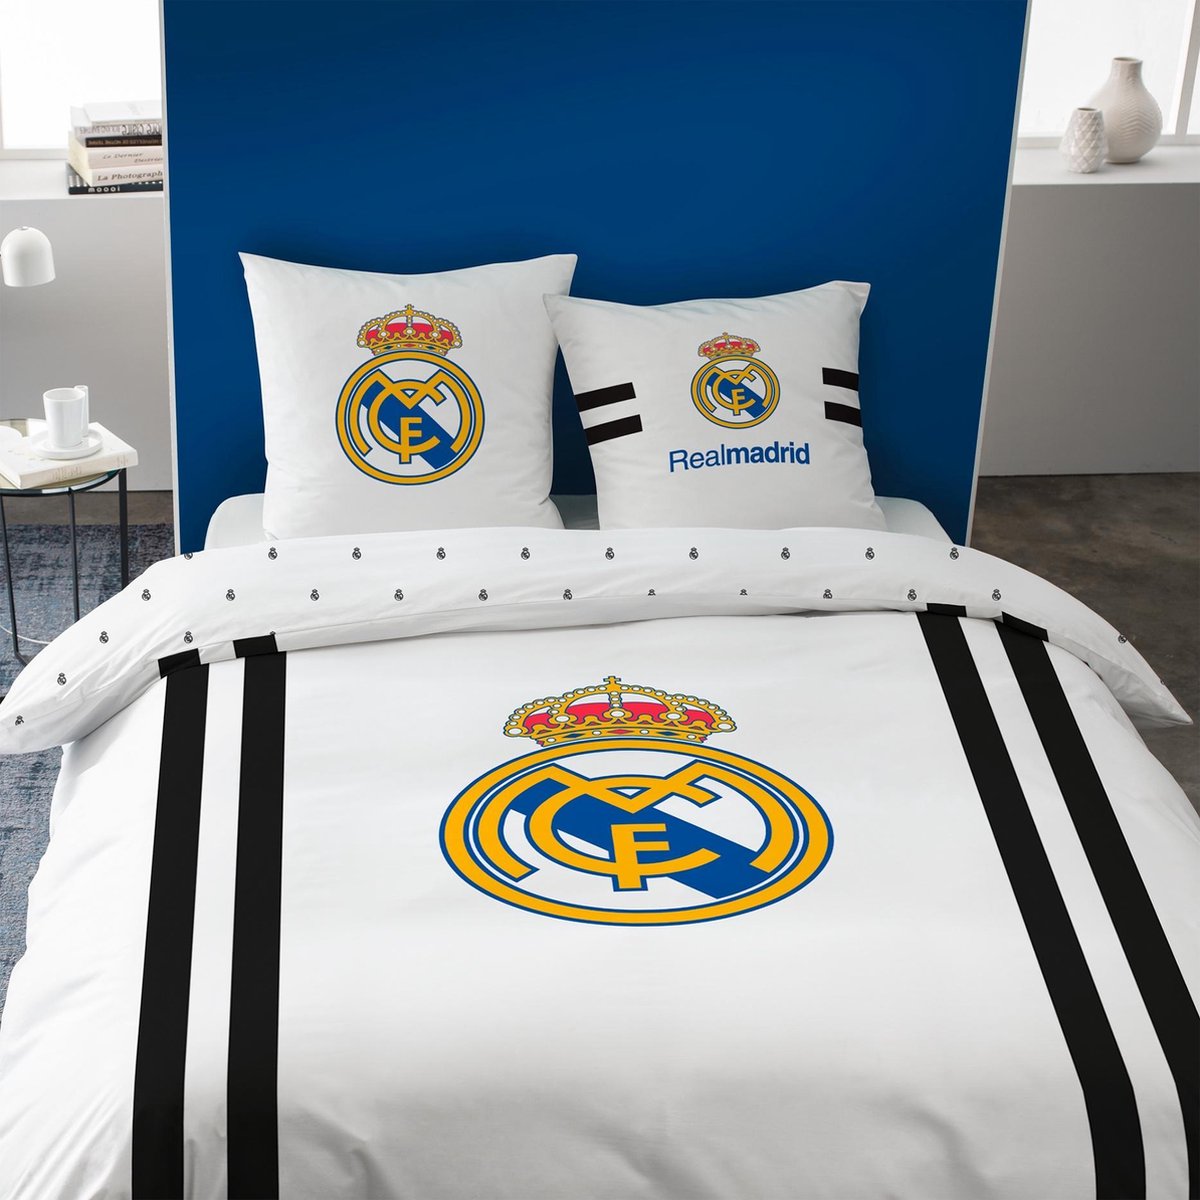 Real Madrid Maillot Dekbedovertrek - Tweepersoons - 240 x 220 cm - Wit |